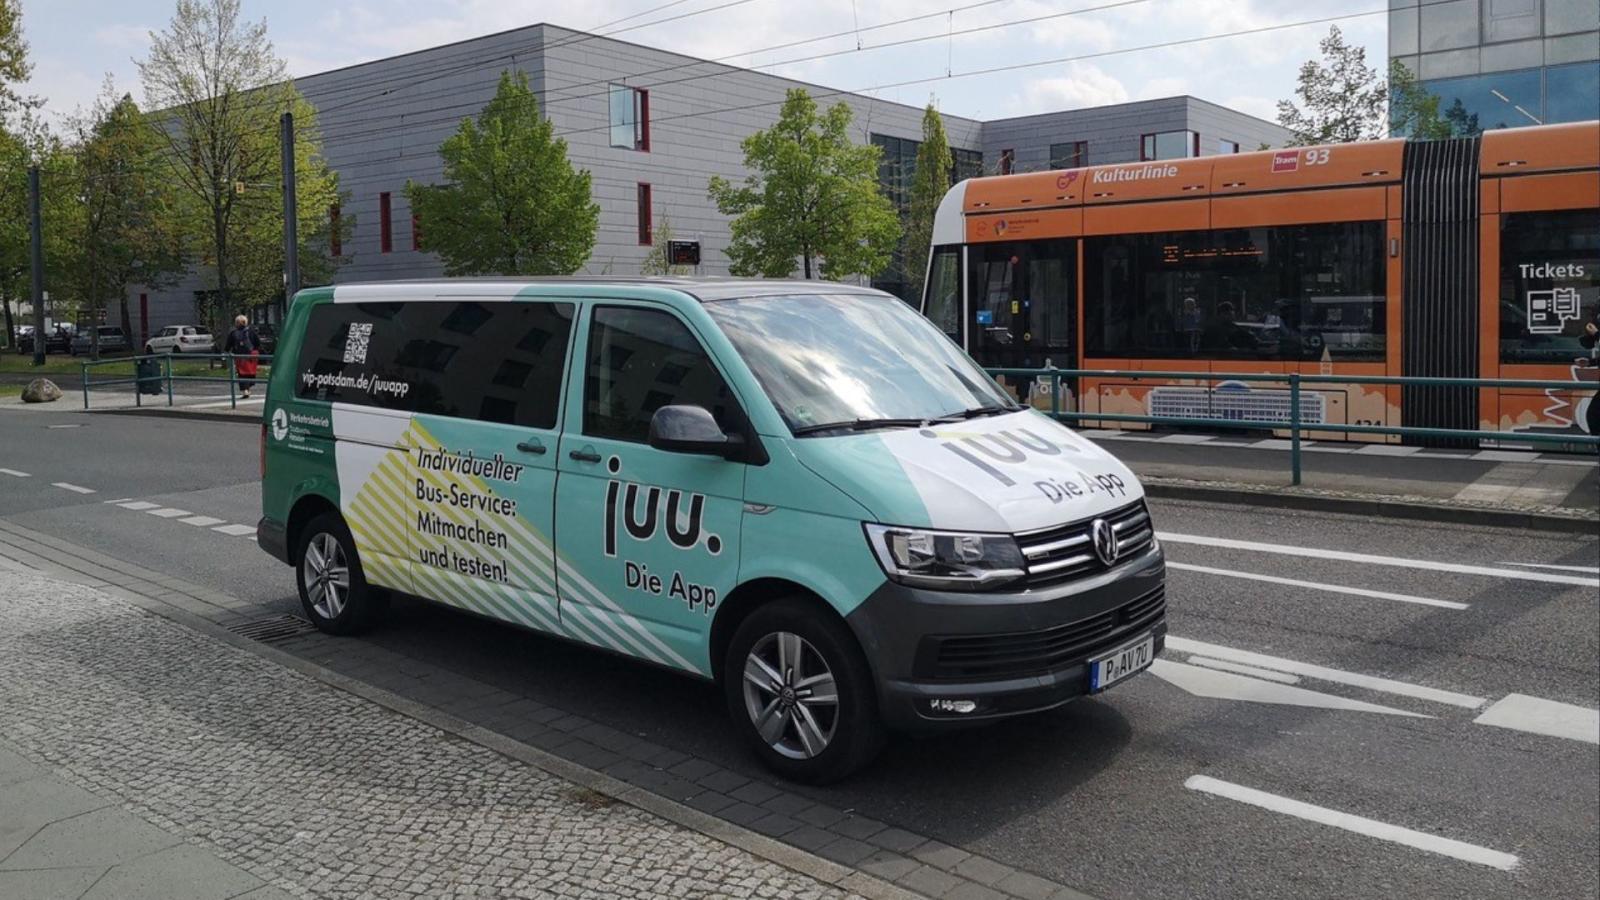 Der Minibus "Juu-Limo" steht auf der Straße vor der Straßenbahnhaltestelle Fachhochschule. Im Hintergrund befindet sich eine einfahrende Tram sowie das Hauptgebäude der Fachhochschule Potsdam